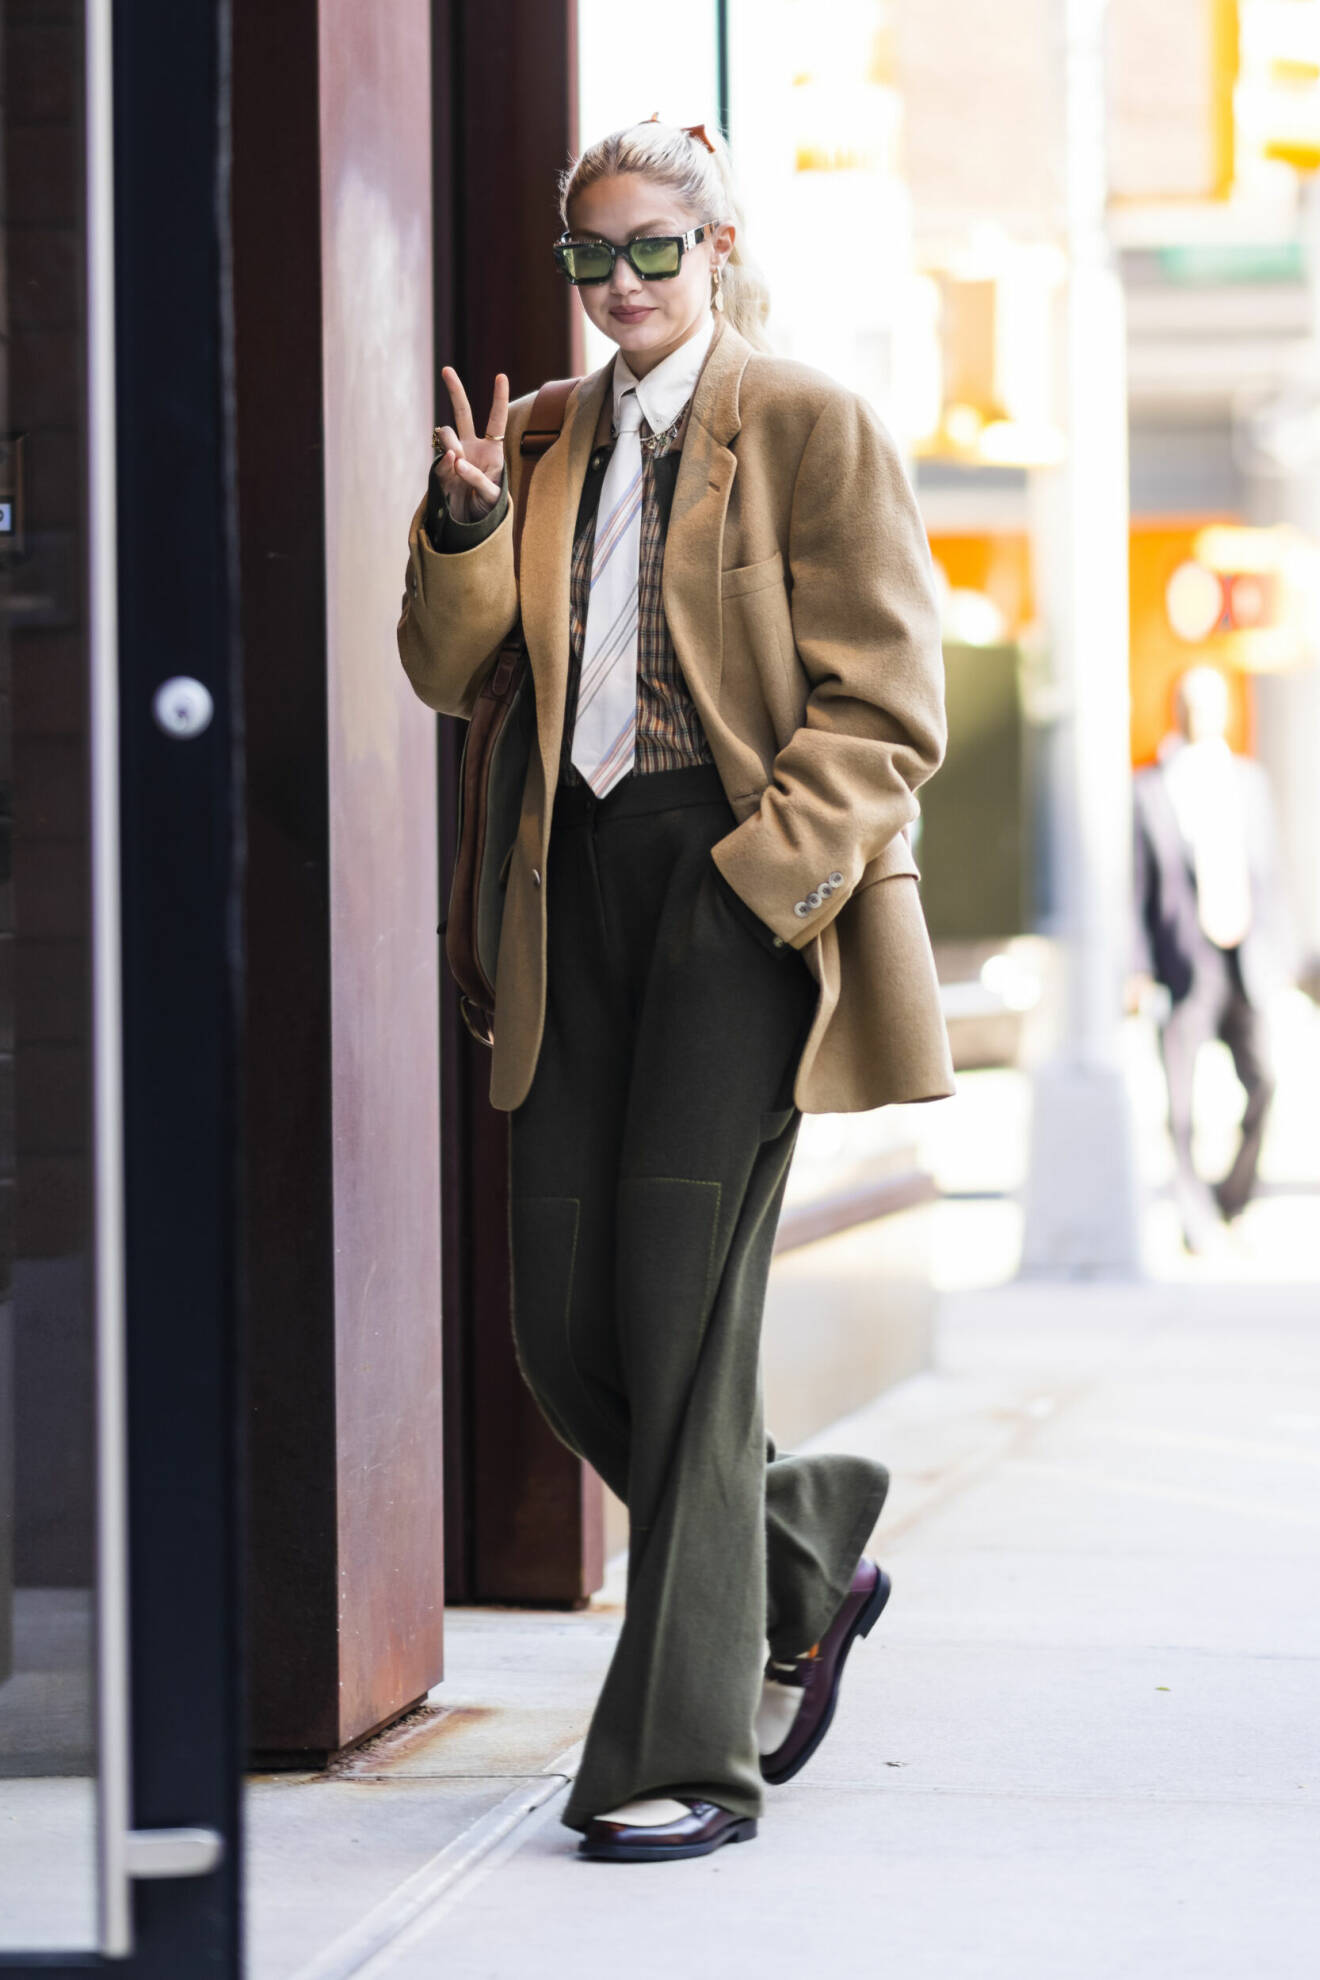 Gigi Hadid i New York iklädd skjorta och slips.